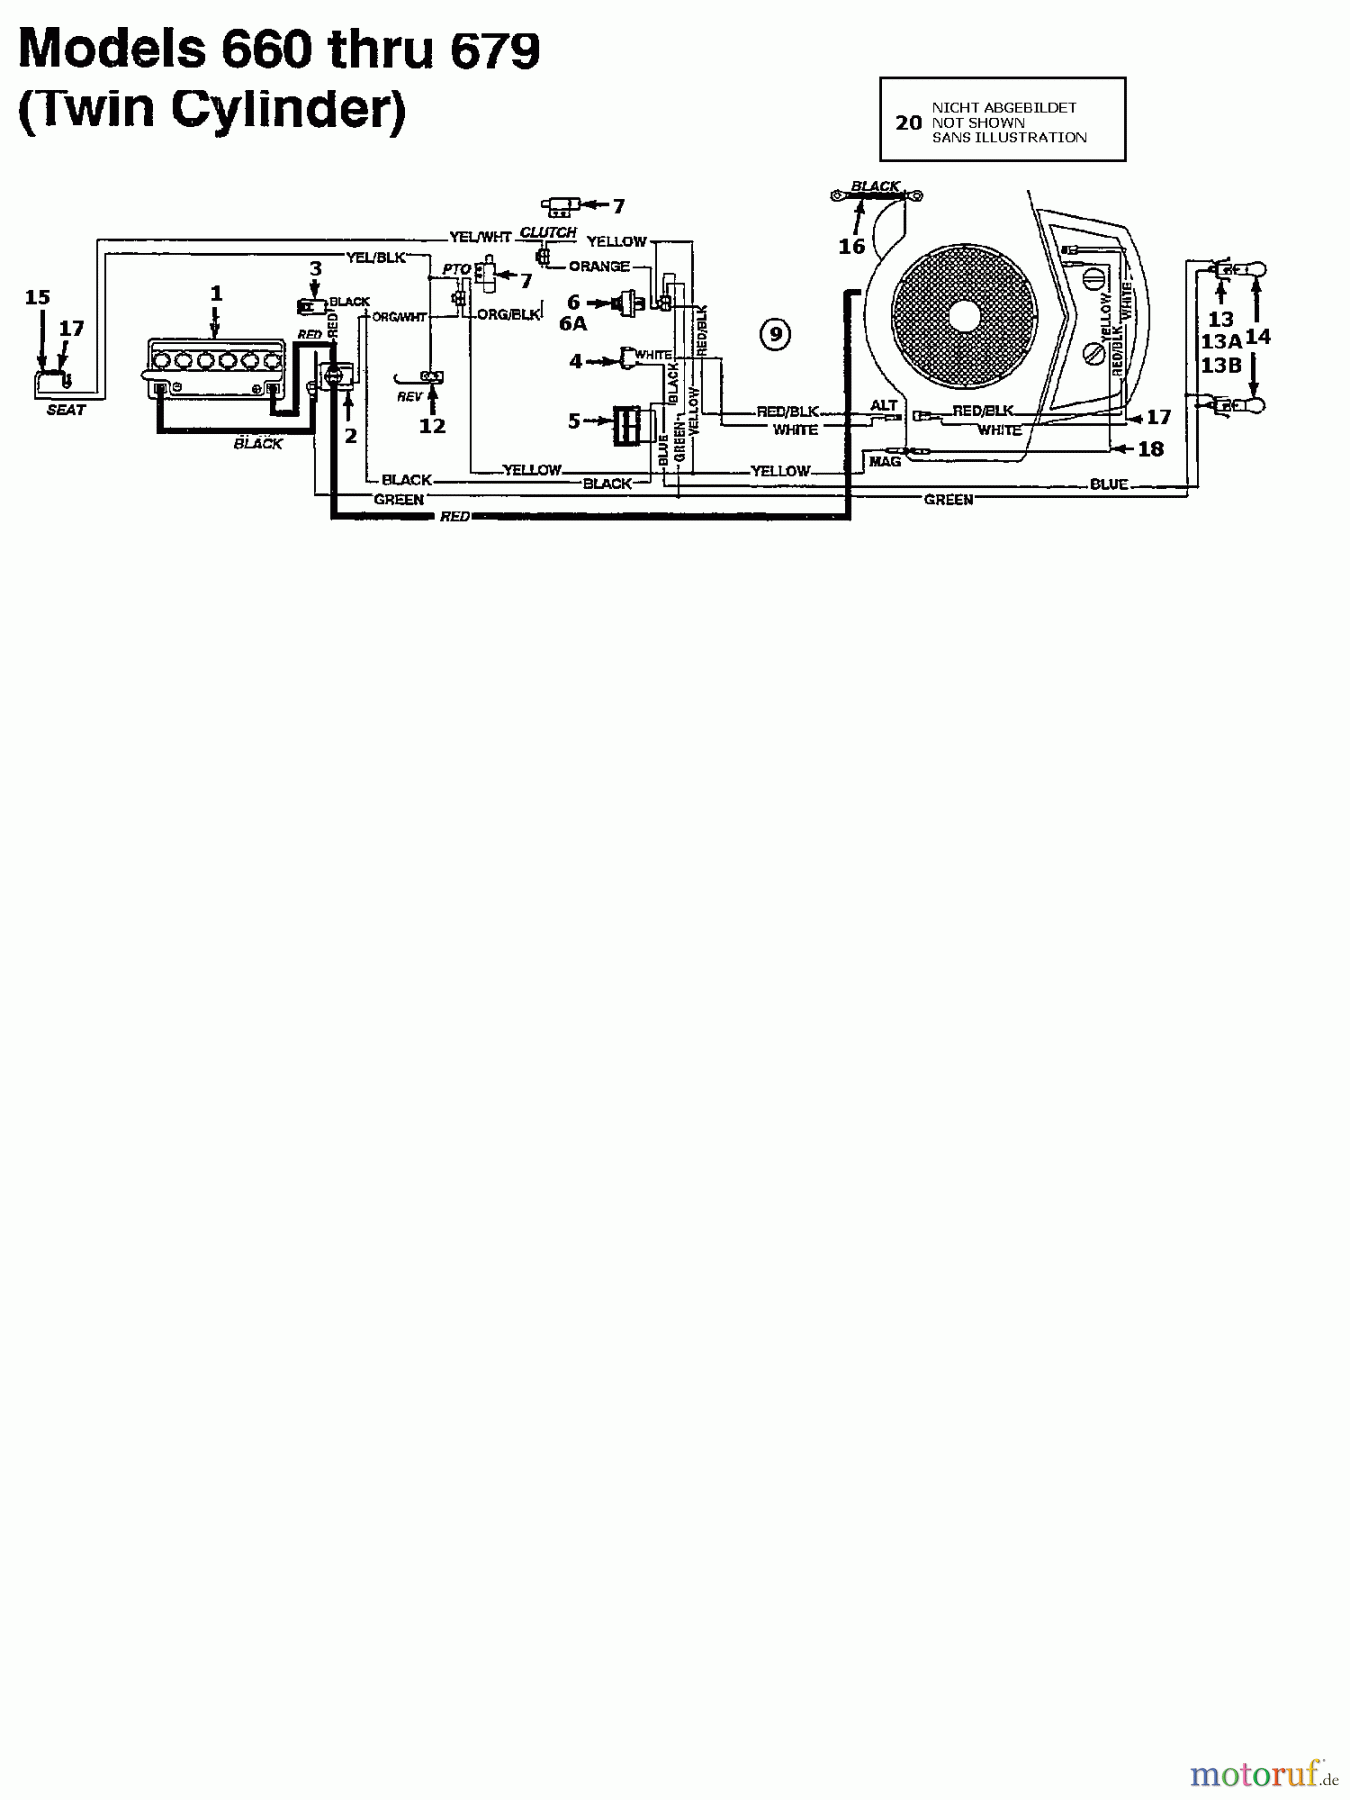  Agria Tracteurs de pelouse 4600/96 135K679F609  (1995) Plan électrique 2 cylindre